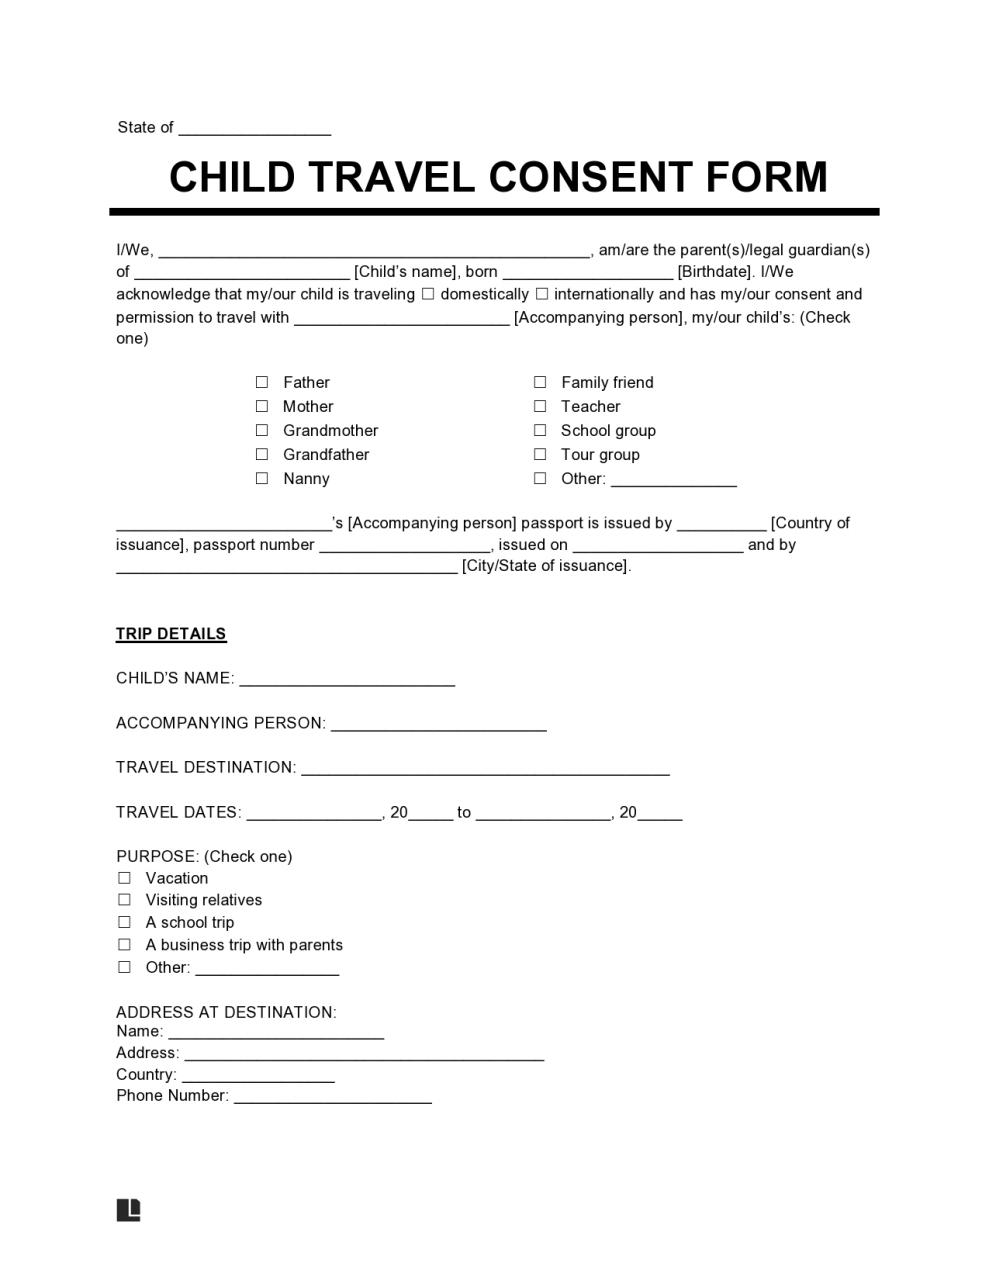 Formulario de consentimiento de viaje gratuito para niños 42